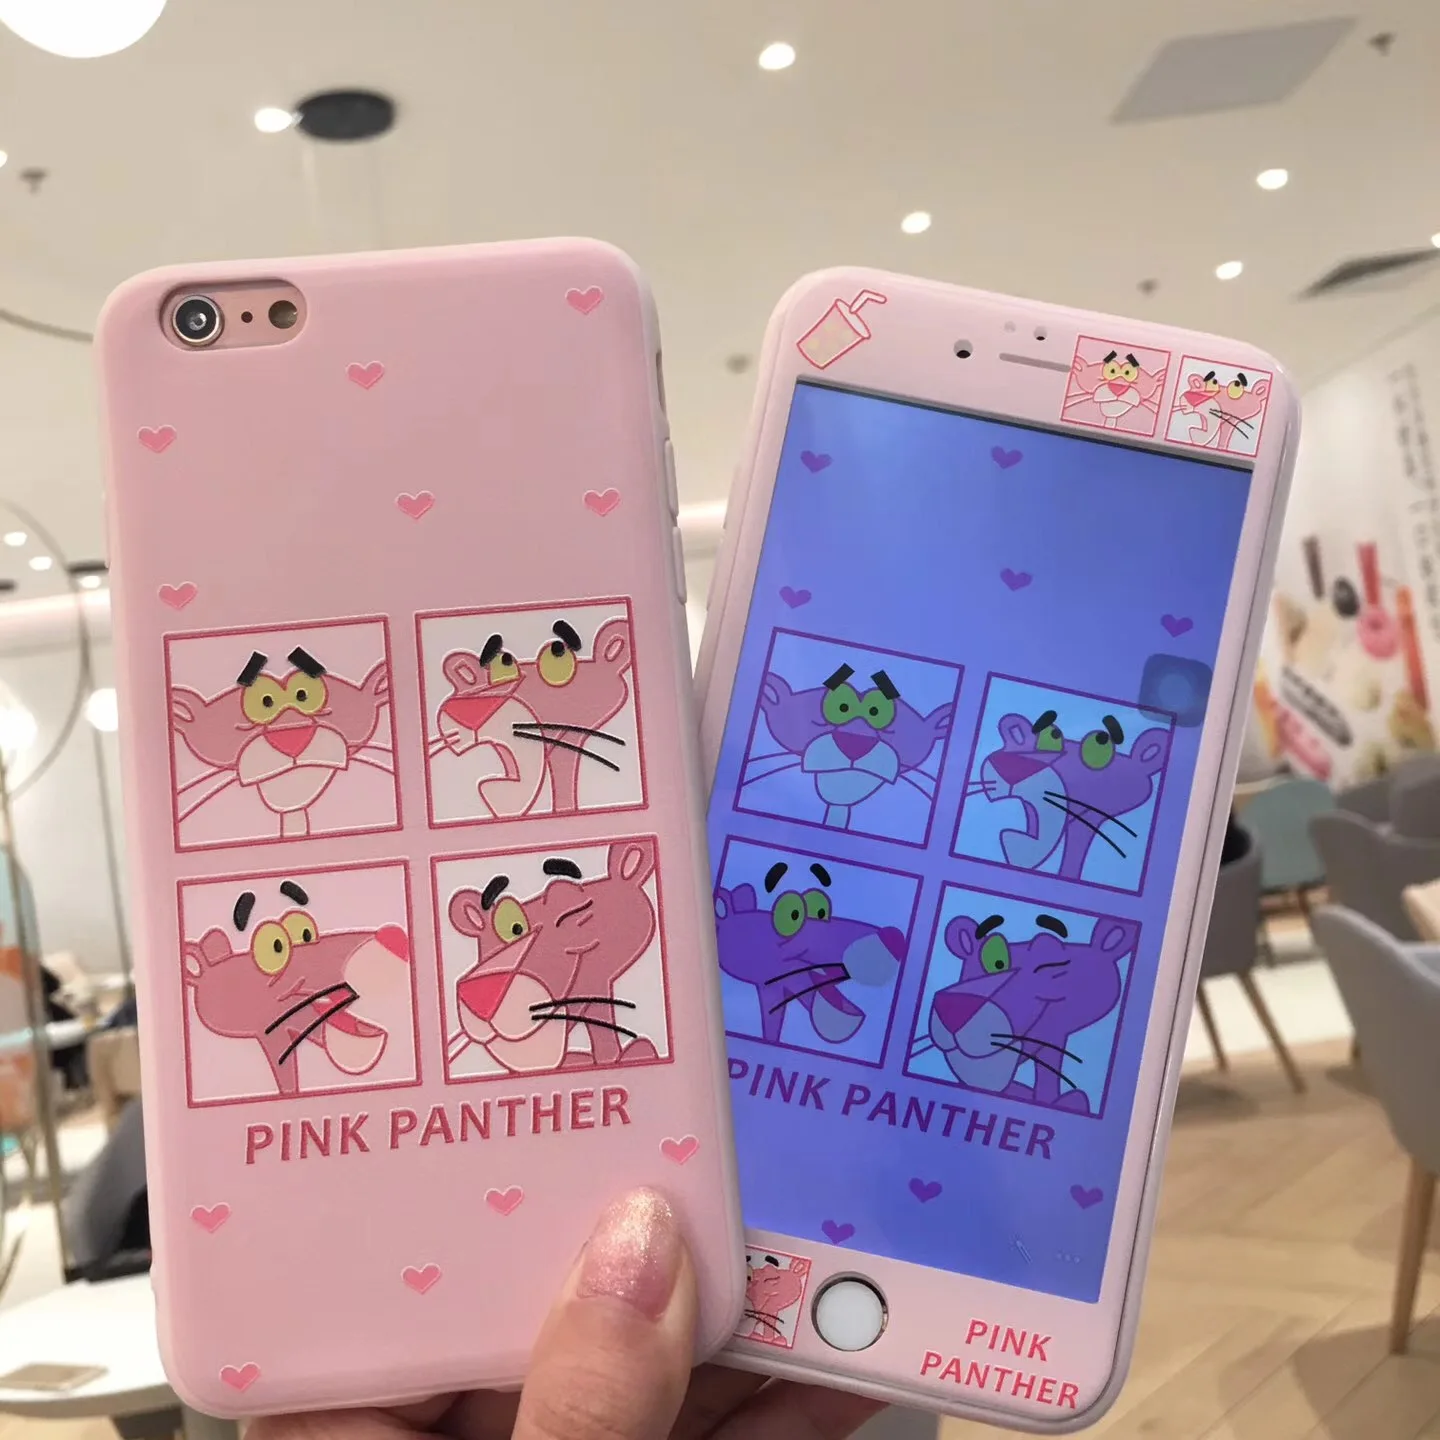 Розовый чехол с принтом "Сейлор Мун" для iPhone 8 Plus/7/7 Plus чехол s Закаленное Стекло для iPhone 6 6s Plus Мягкий чехол мультяшный протектор экрана - Цвет: as show